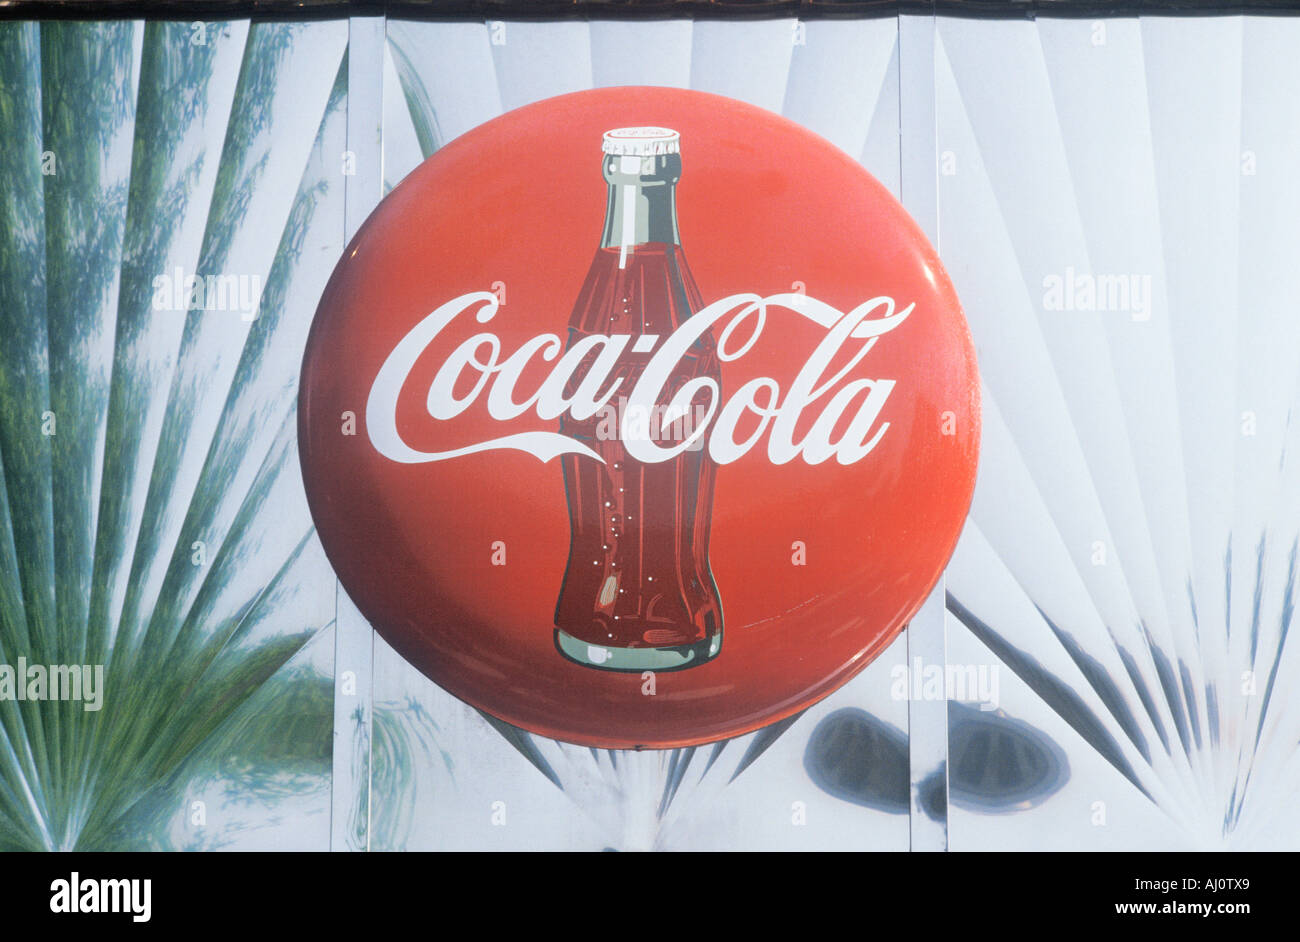 Publicidad de coca cola fotografías e imágenes de alta resolución - Alamy